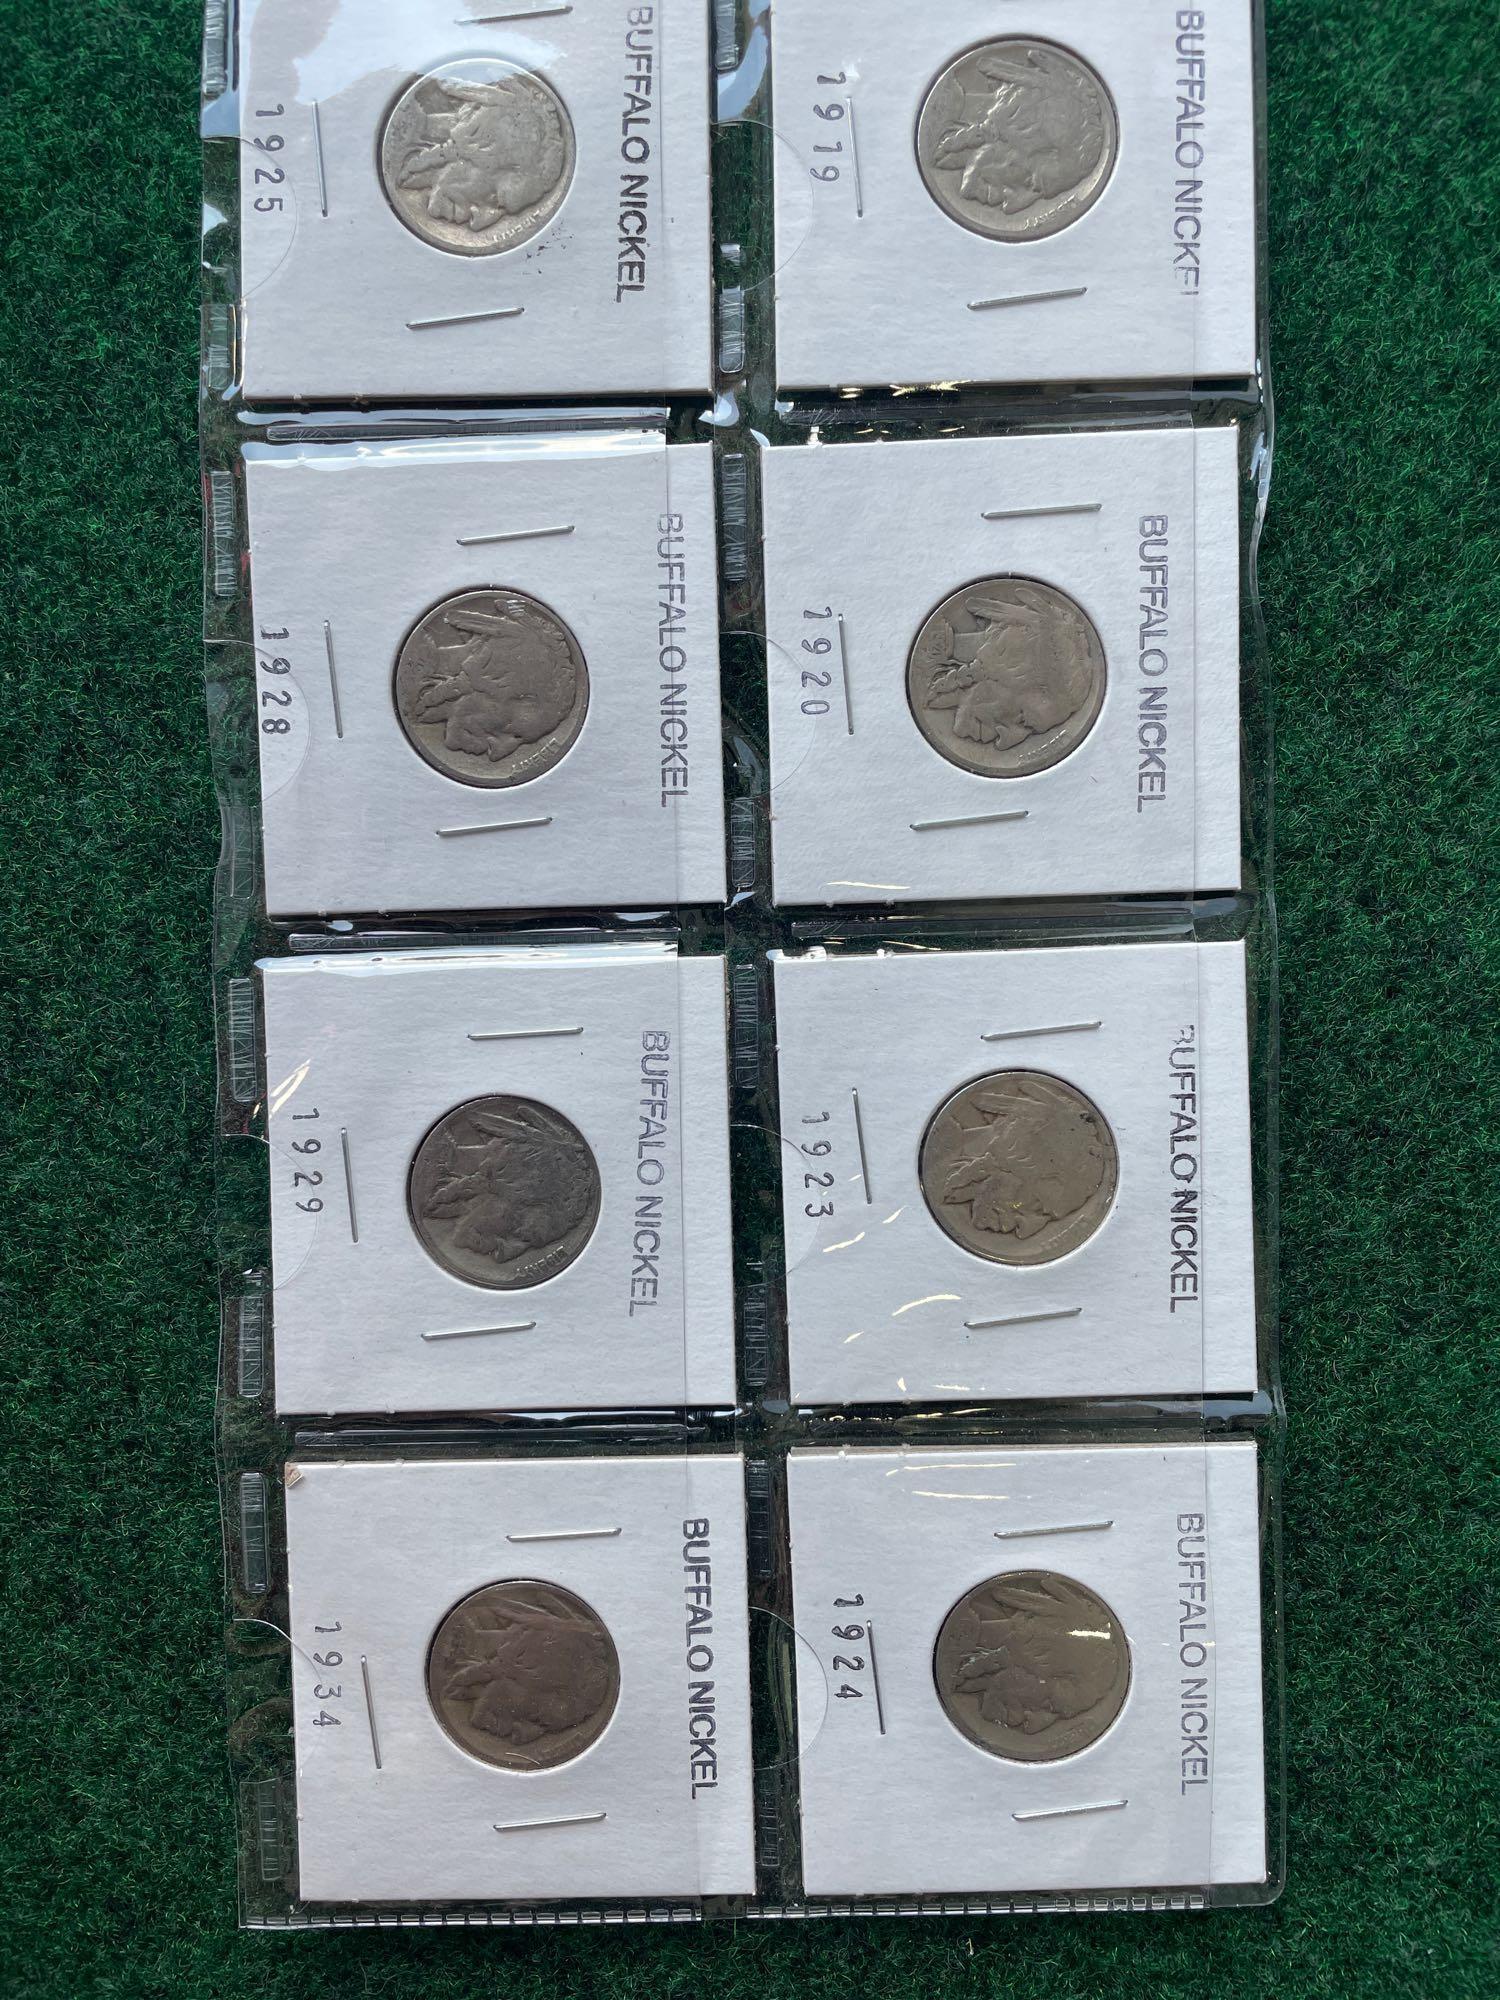 Jefferson Buffalo Nickels